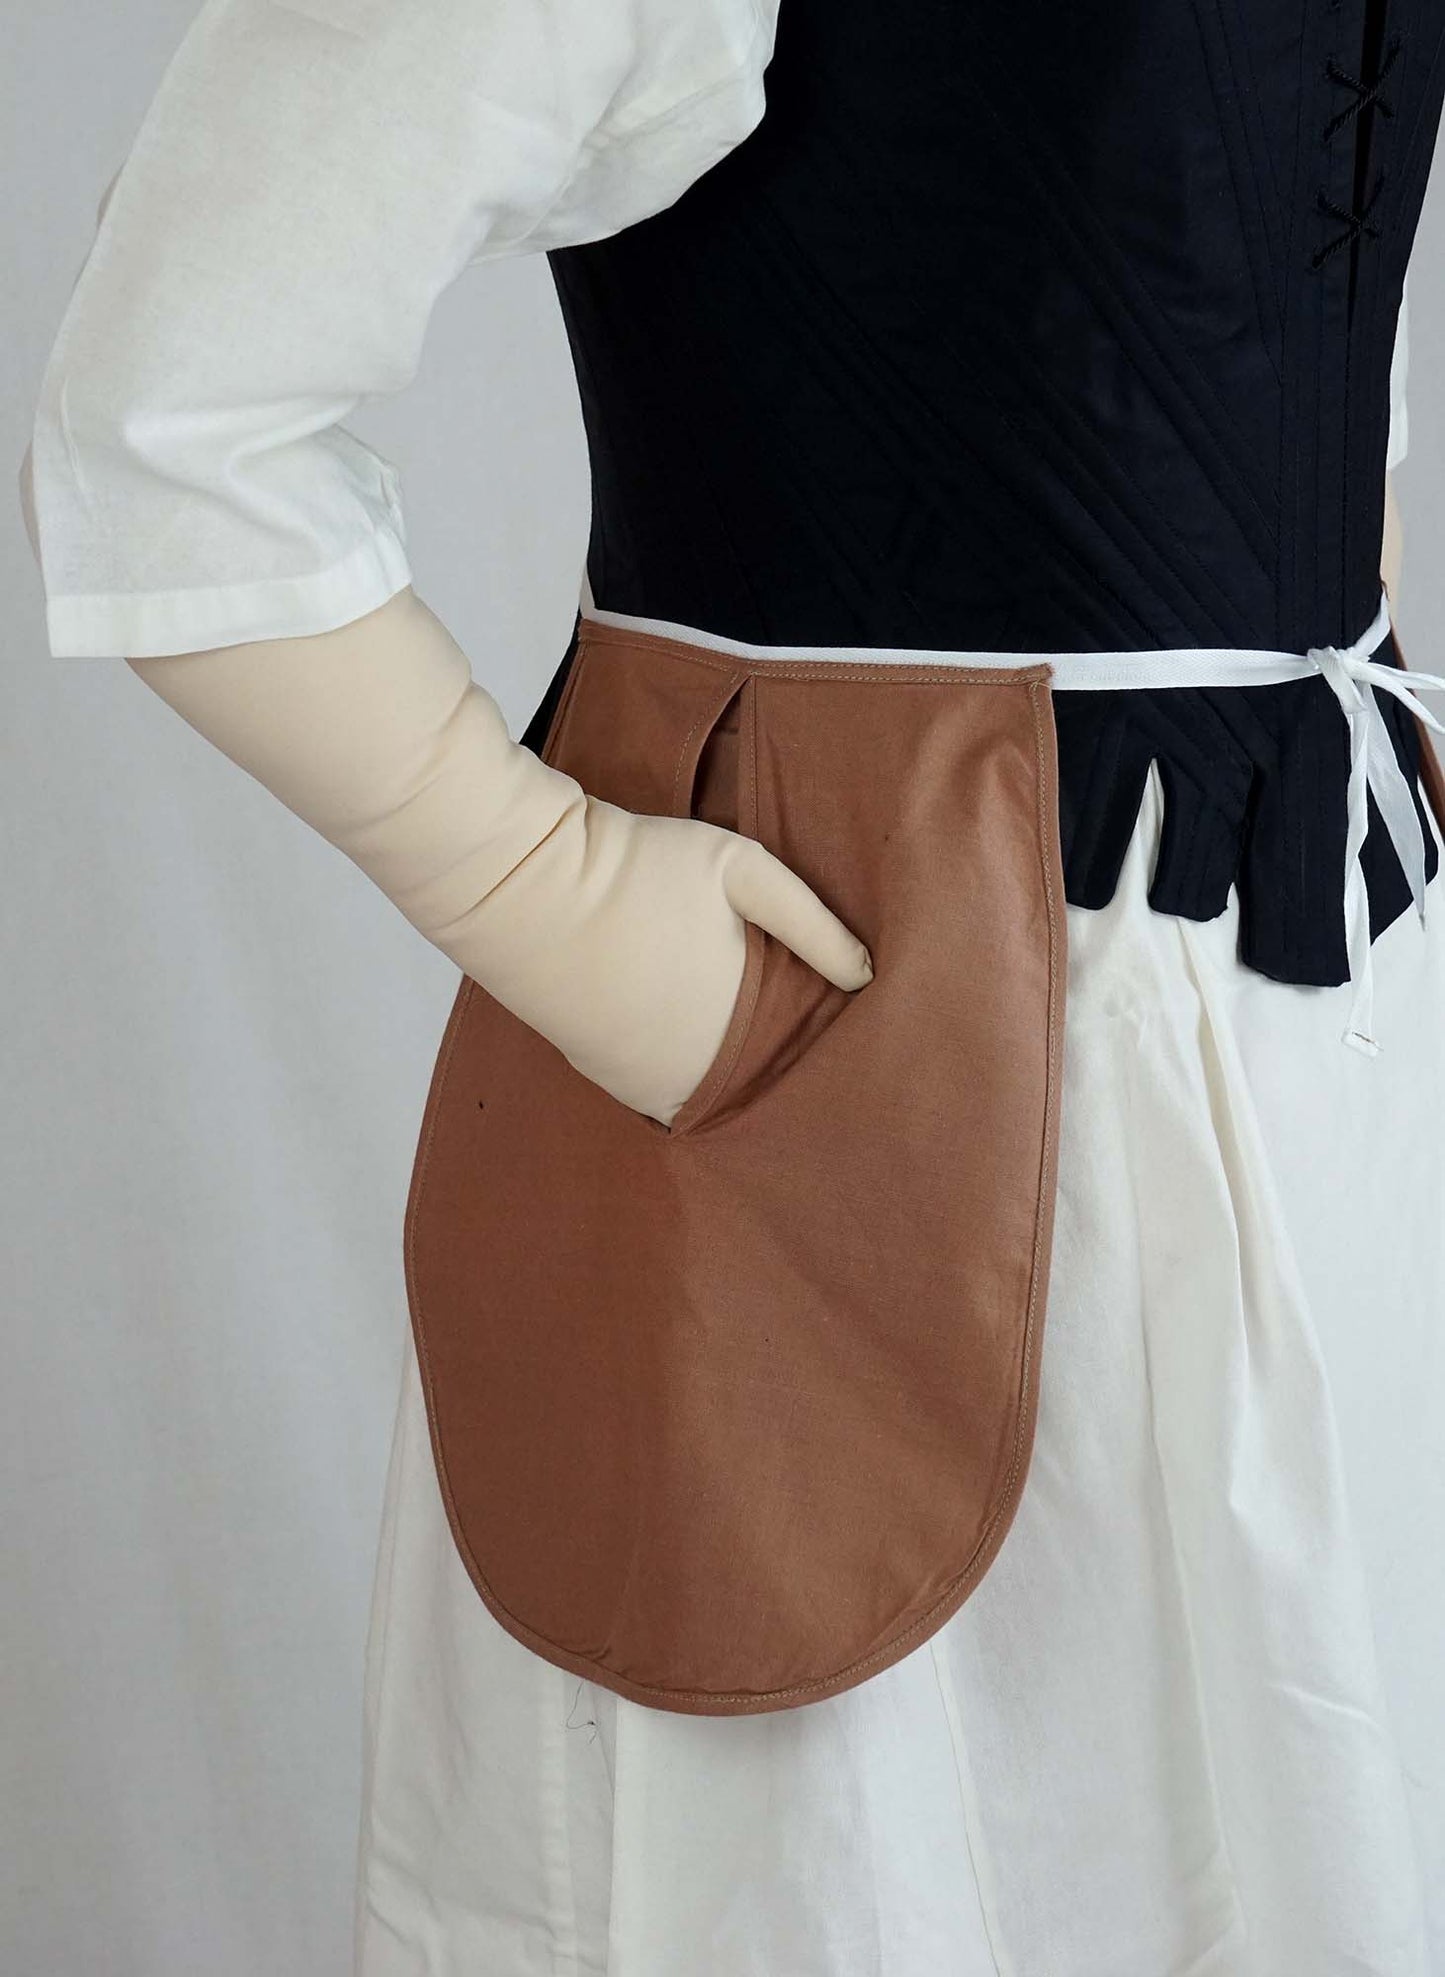 #0419 Rokoko Kleid Redingote um 1780 inkl. Po-Kissen, Taschen und Fichu Schnittmuster Größe EU 34-56 PDF Download